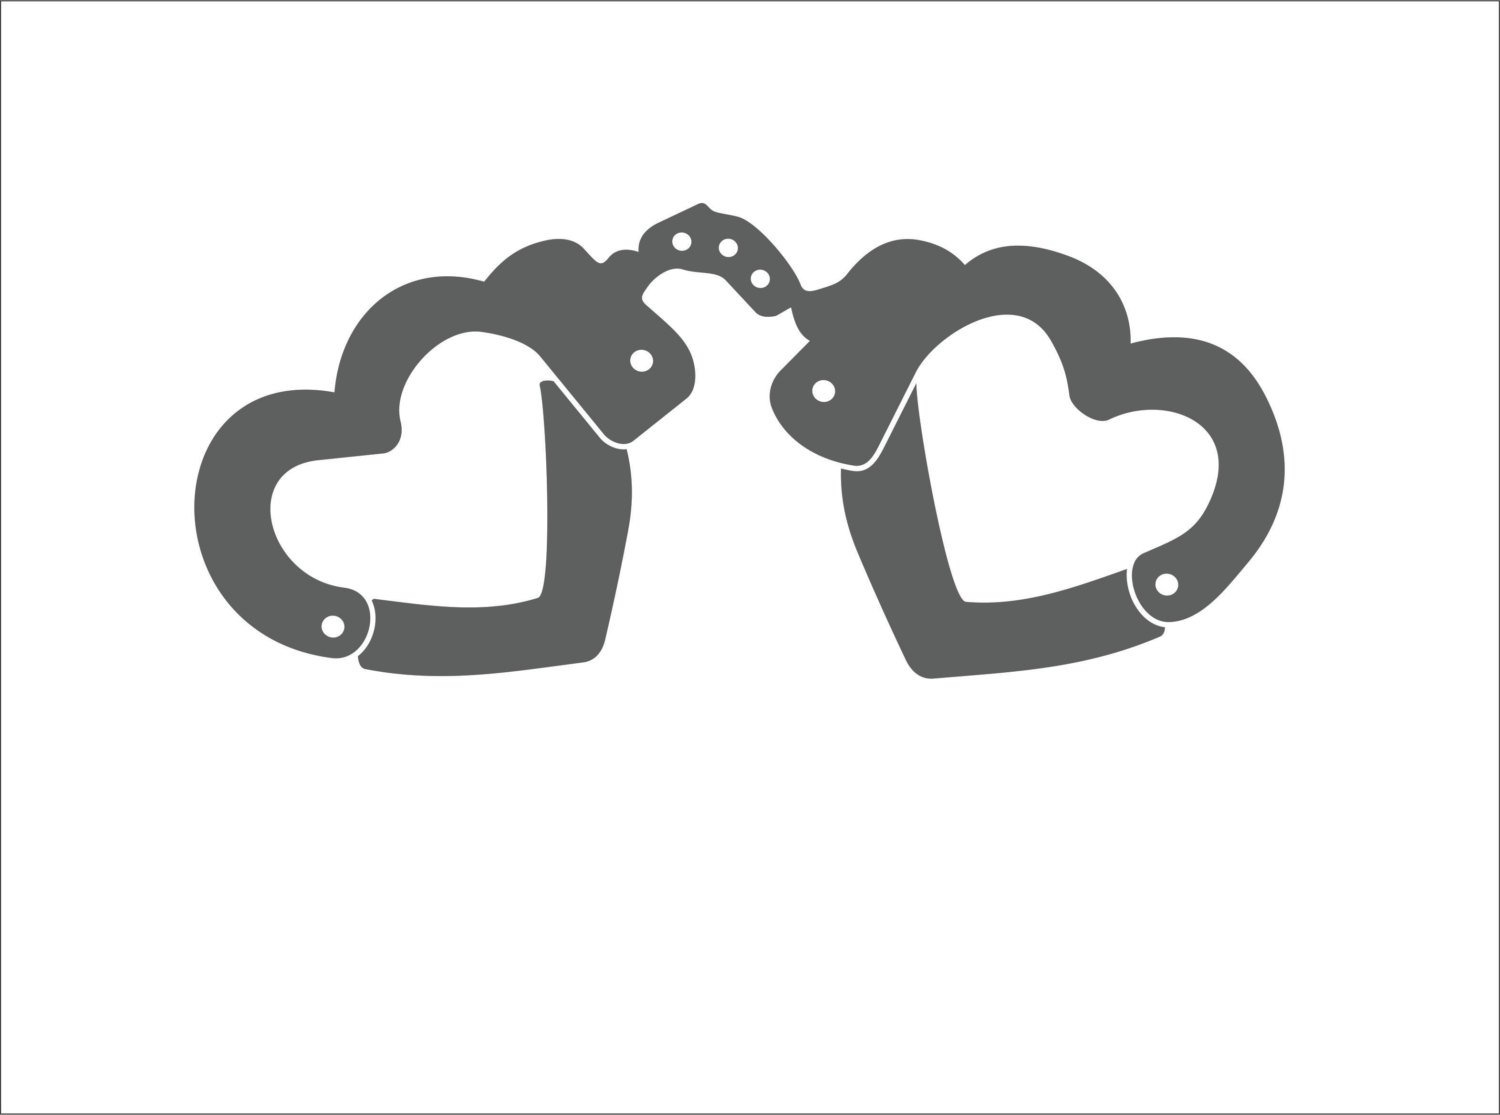 handcuffs clipart heart